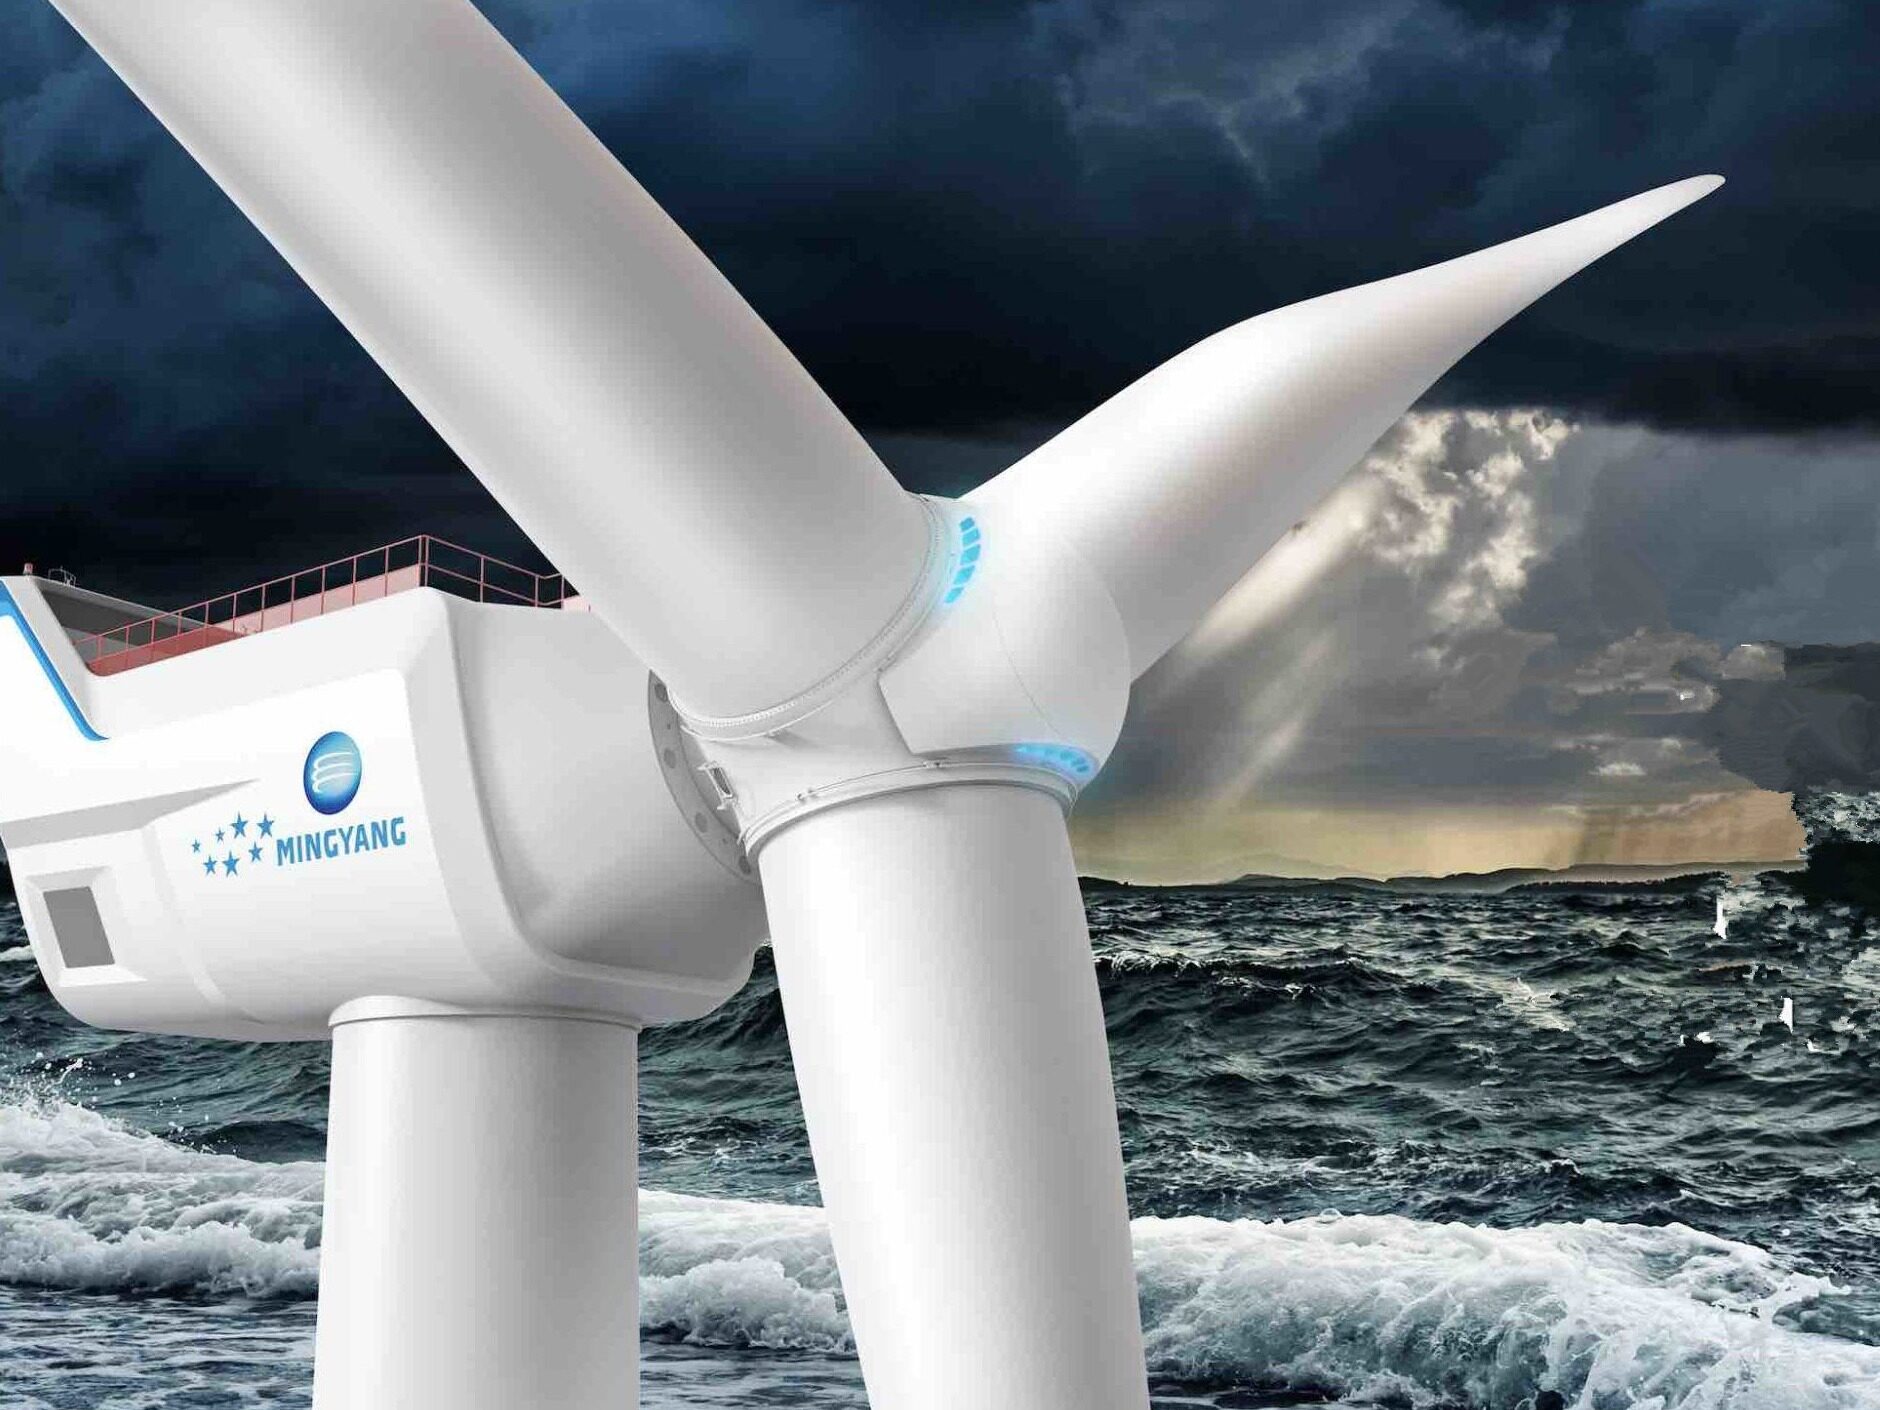 明阳智能推出世界最大巨无霸海上风力发电机组